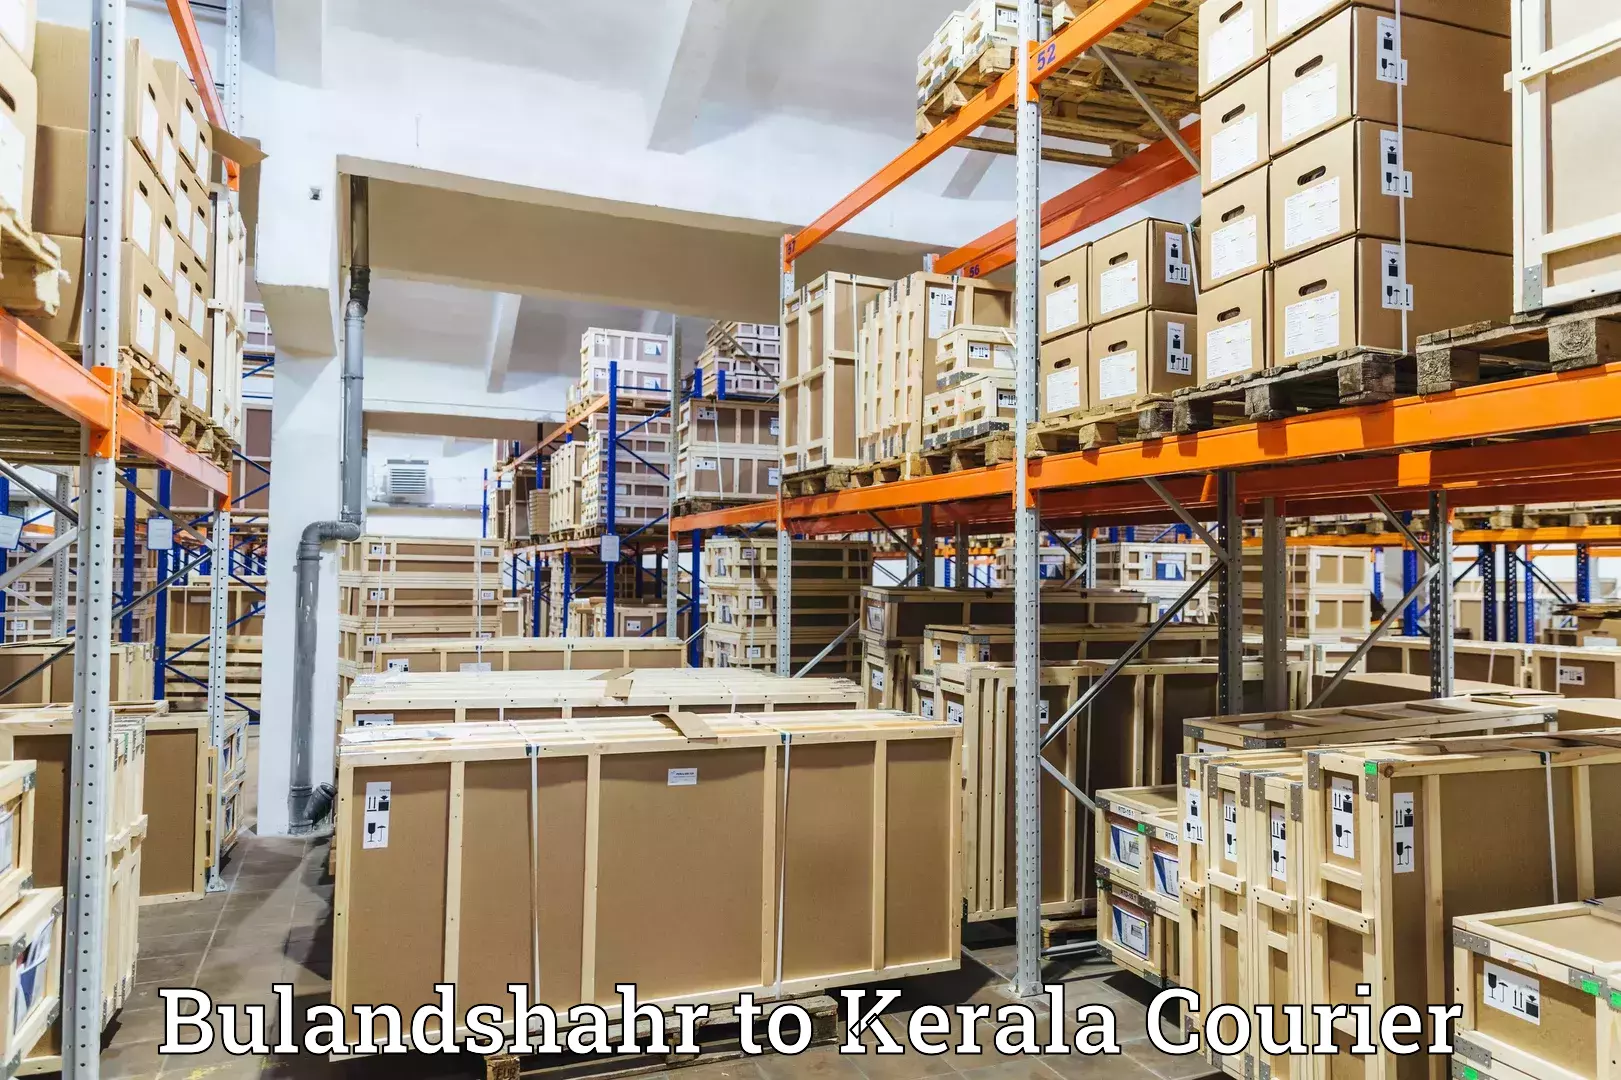 Digital shipping tools Bulandshahr to Kerala